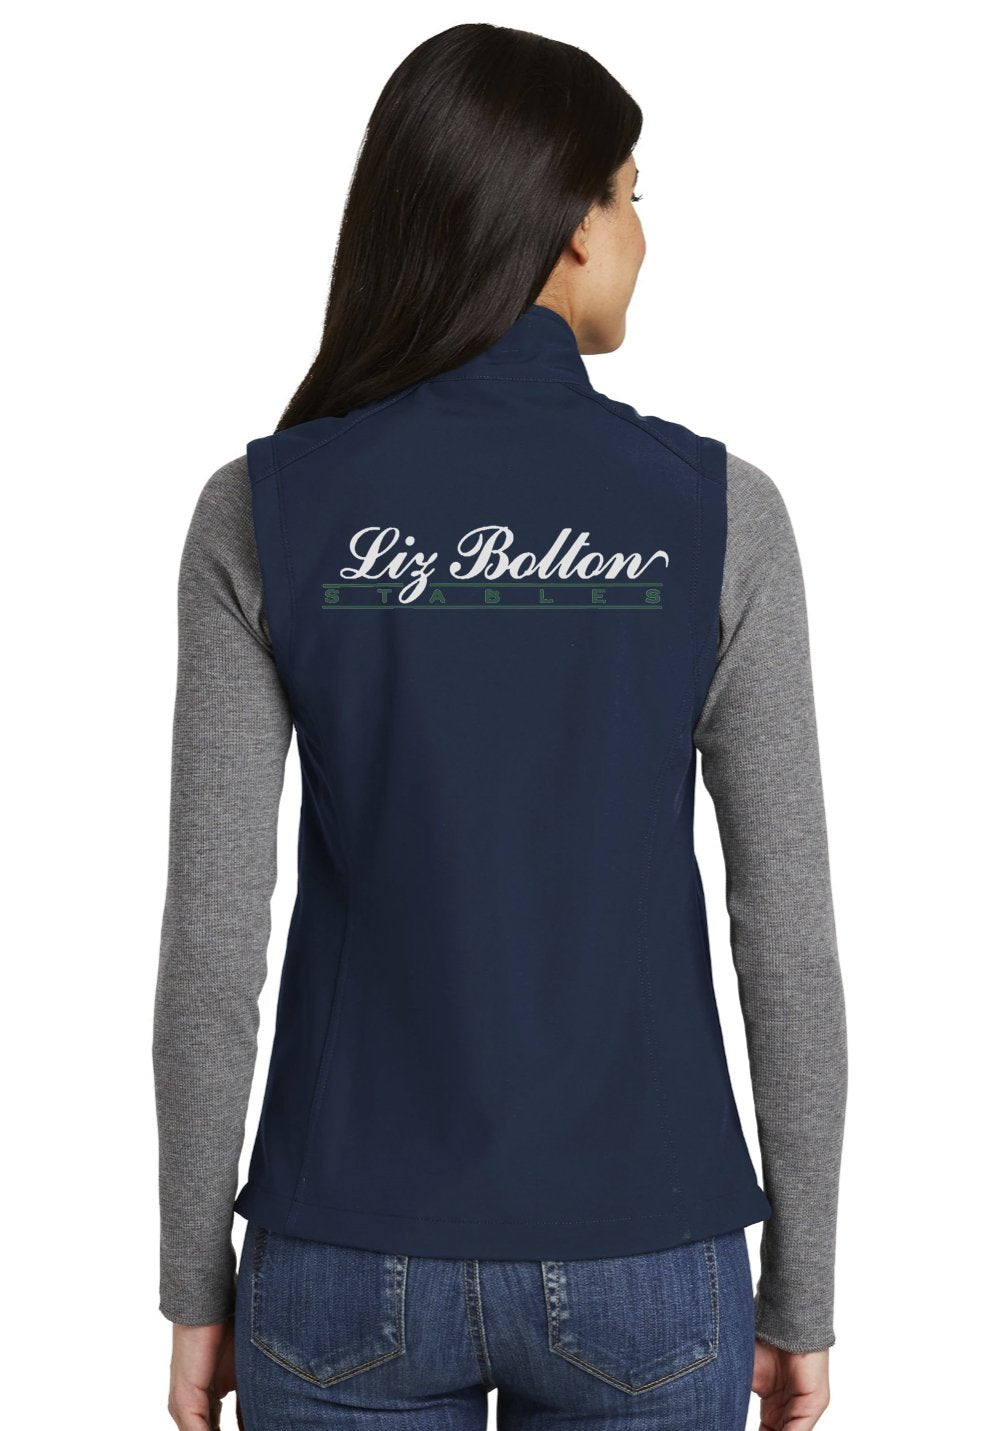 Liz Bolton Stables Port Authority® Womens Core Soft Shell Vest - Color Options